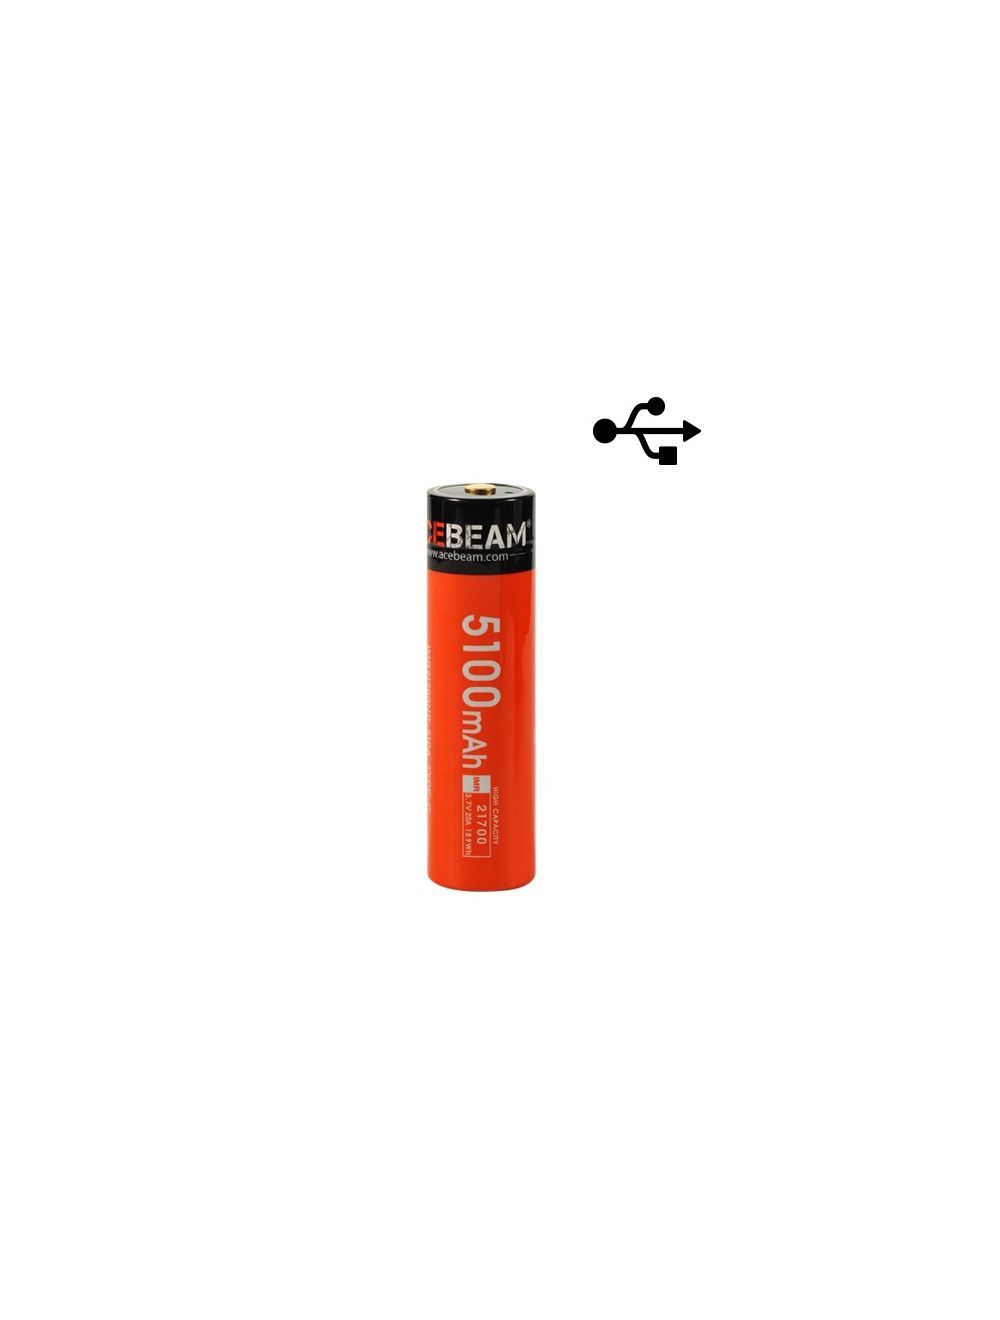 mist Weggooien Bakkerij Acebeam 21700 Batterij Oplaadbaar USB met Oplaadkabel kopen? Zaklampen.nl